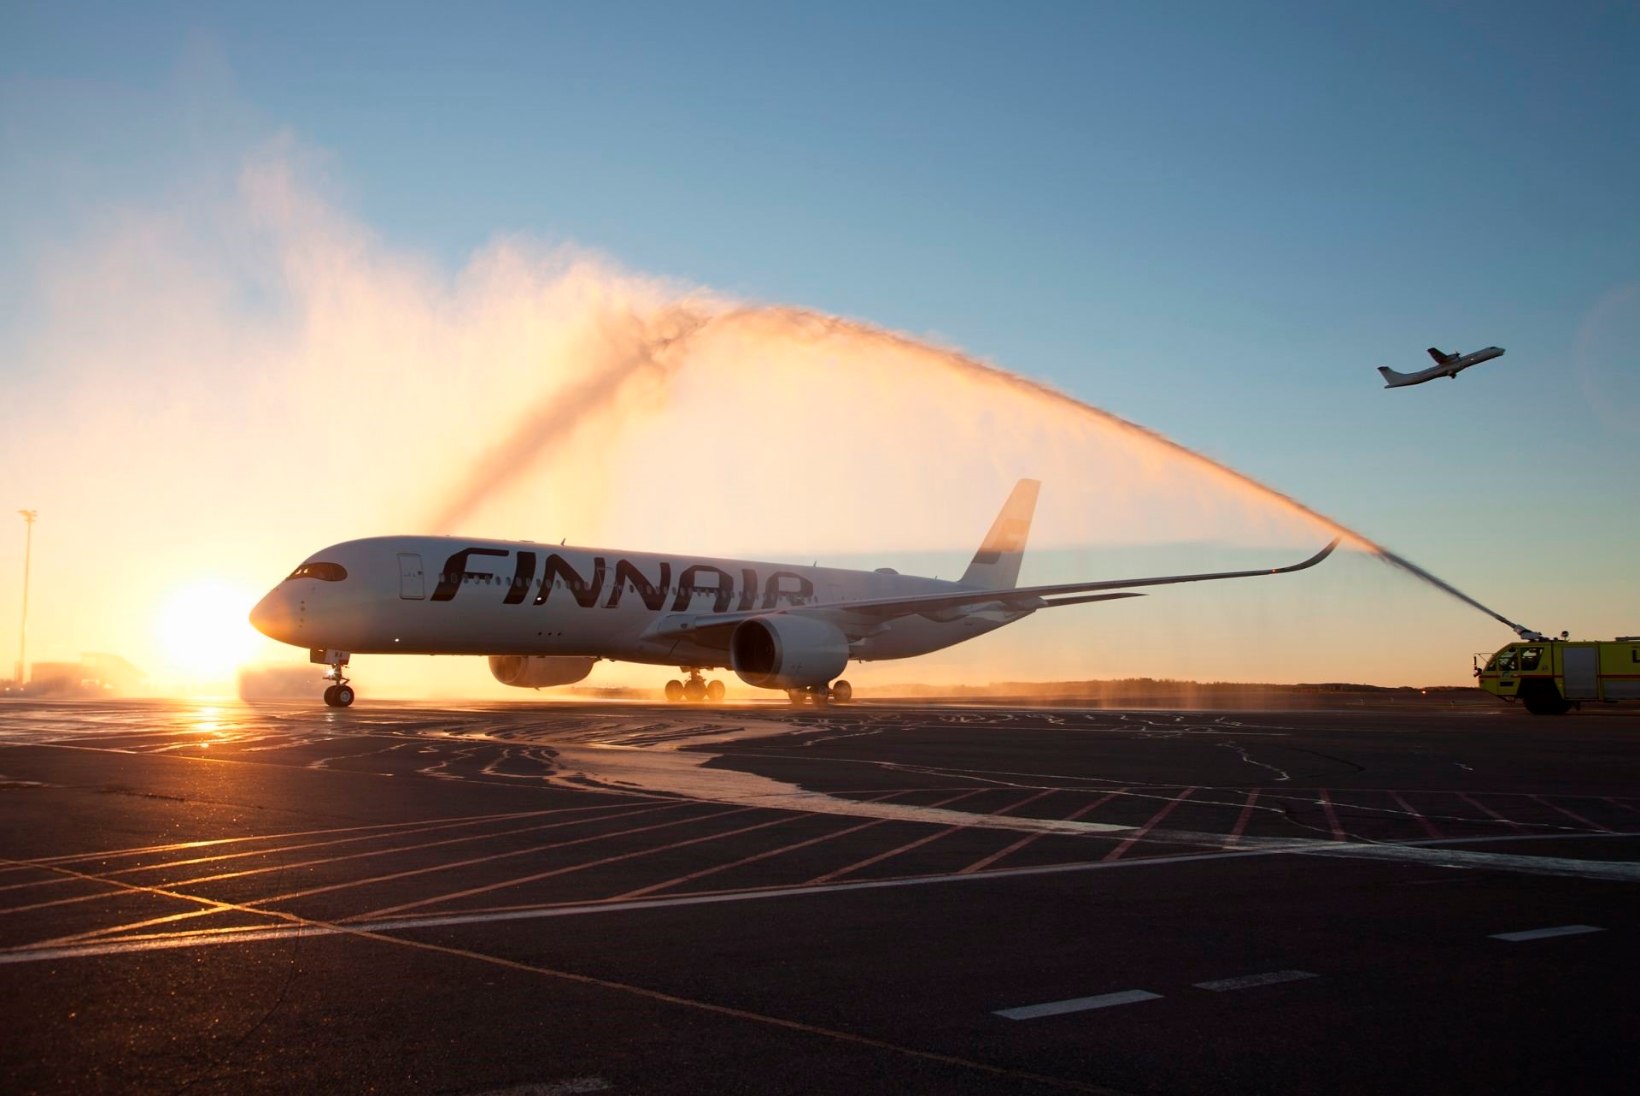 Finnairi Tallinna lendude arv kasvab 10 lennuni päevas